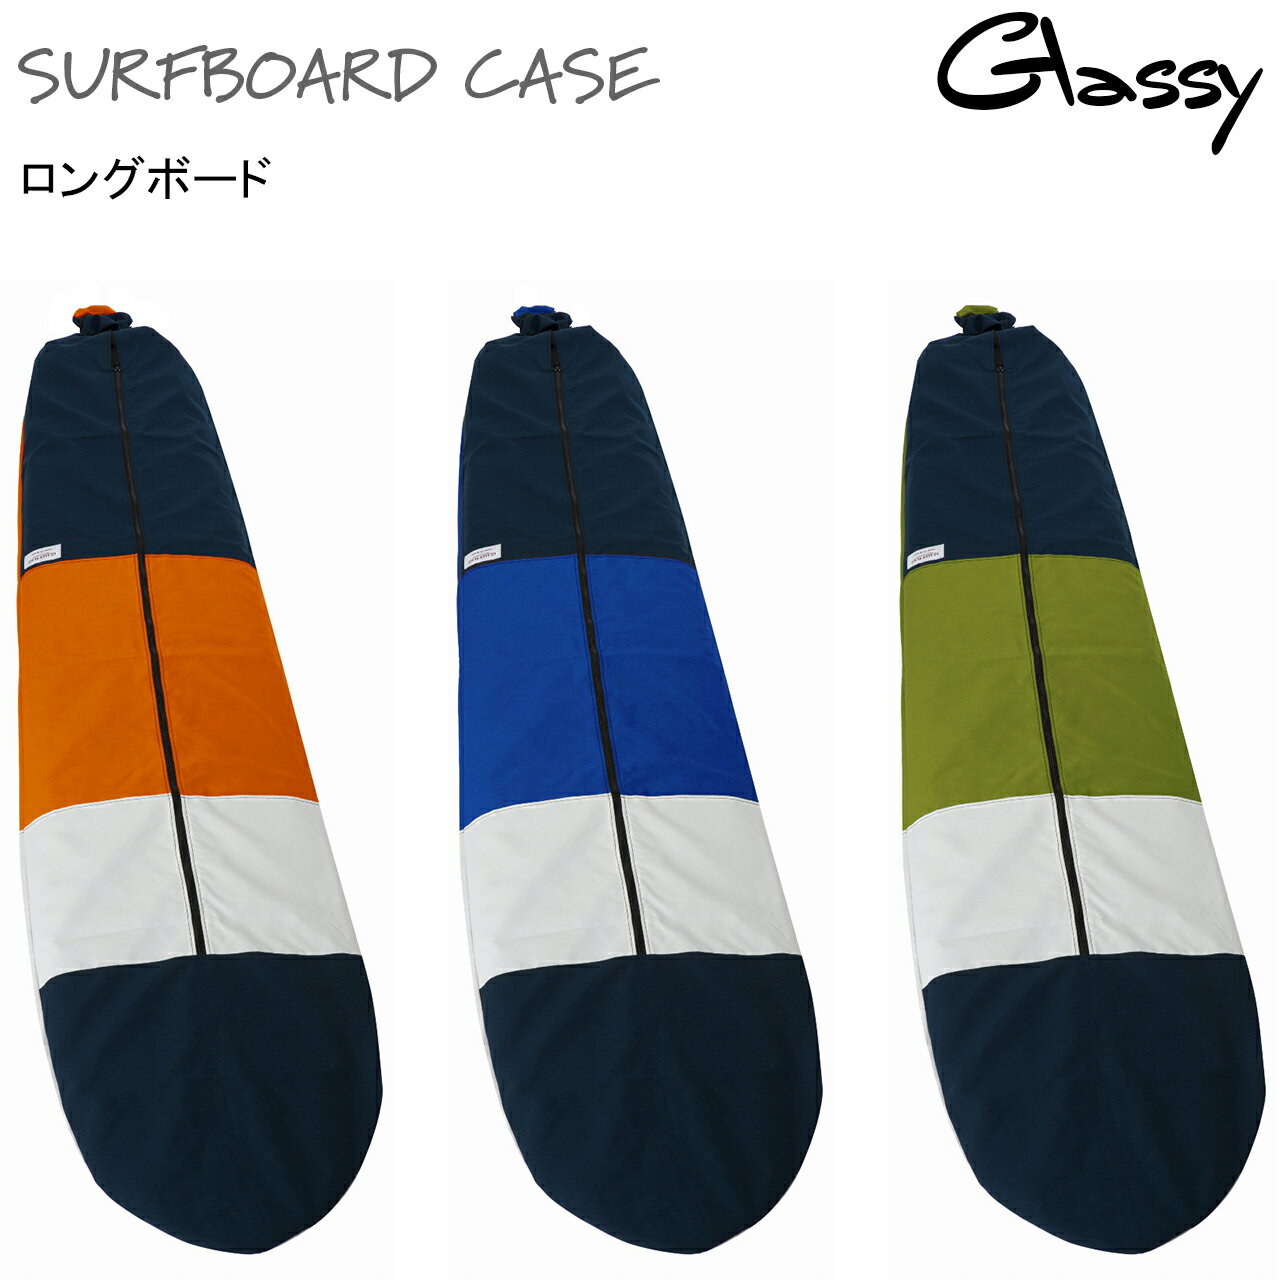 サーフボードケース サーフィン ボードケース ソフトケース サーフボードカバー ロングボード ロング ニットケース より出入れしやすい 裏地あり GLASSY グラッシー